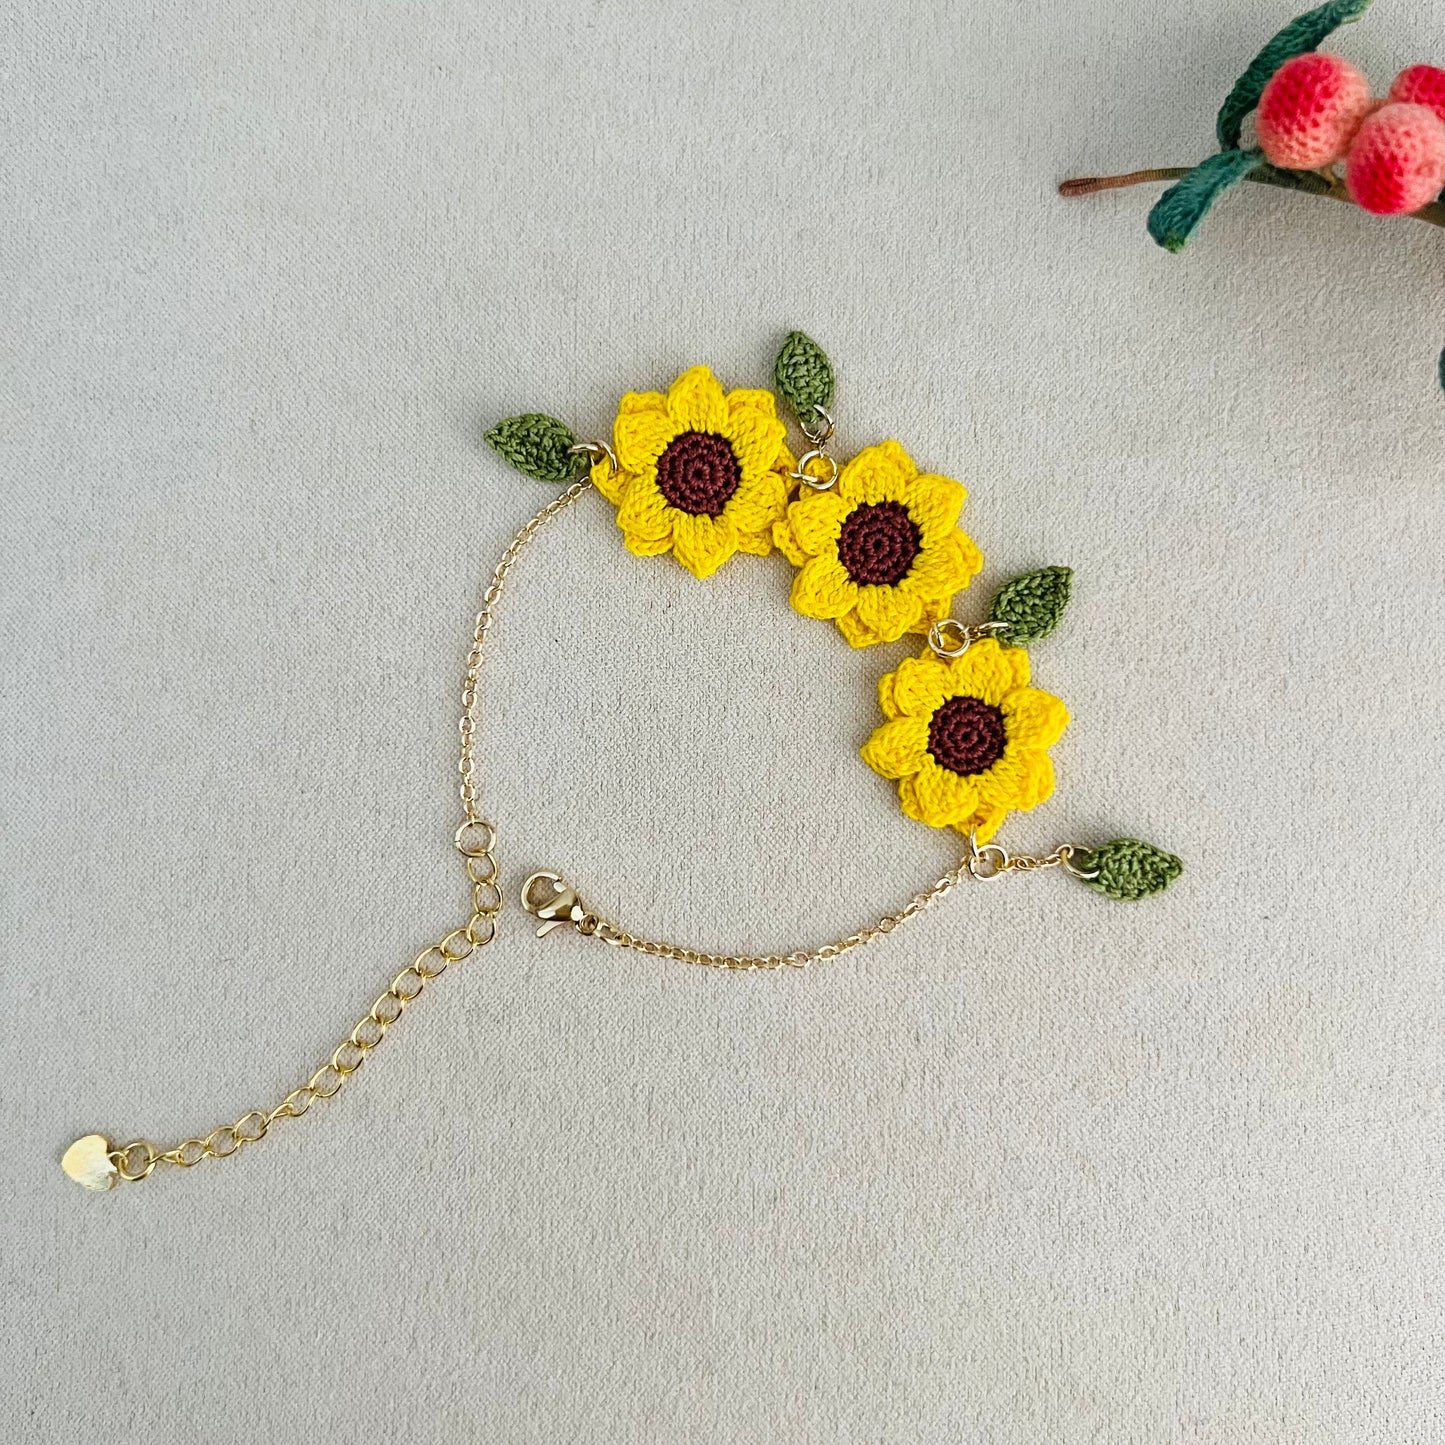 Sunflower Bracelet | Crochet Sunflower Bracelet | Handmade Sunflower Jewelry